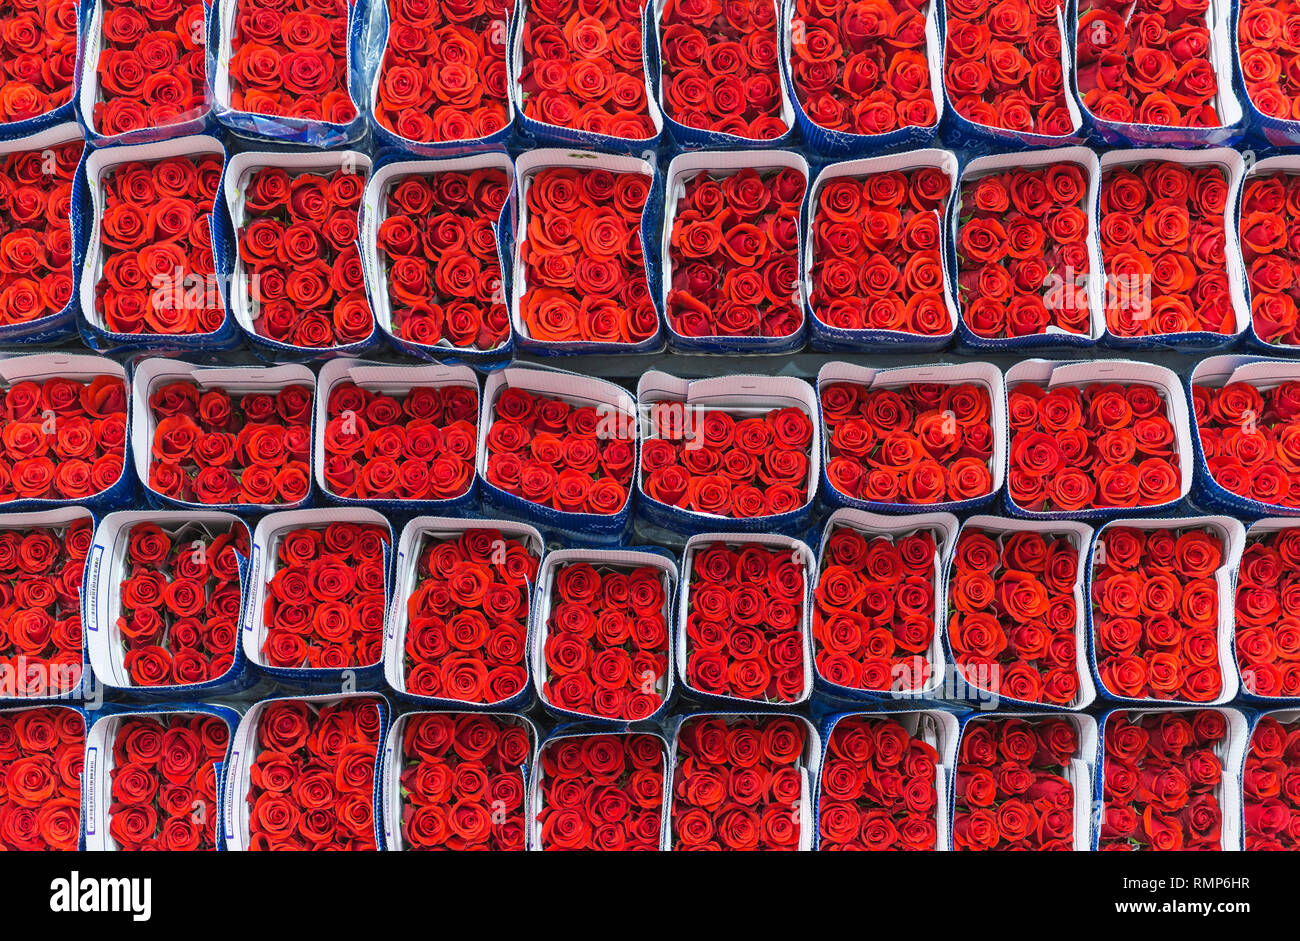 Rote Rosen verpackt und bereit für den Export in der Region Tabacundo und Cayambe, nördlich von Quito, Ecuador. Stockfoto